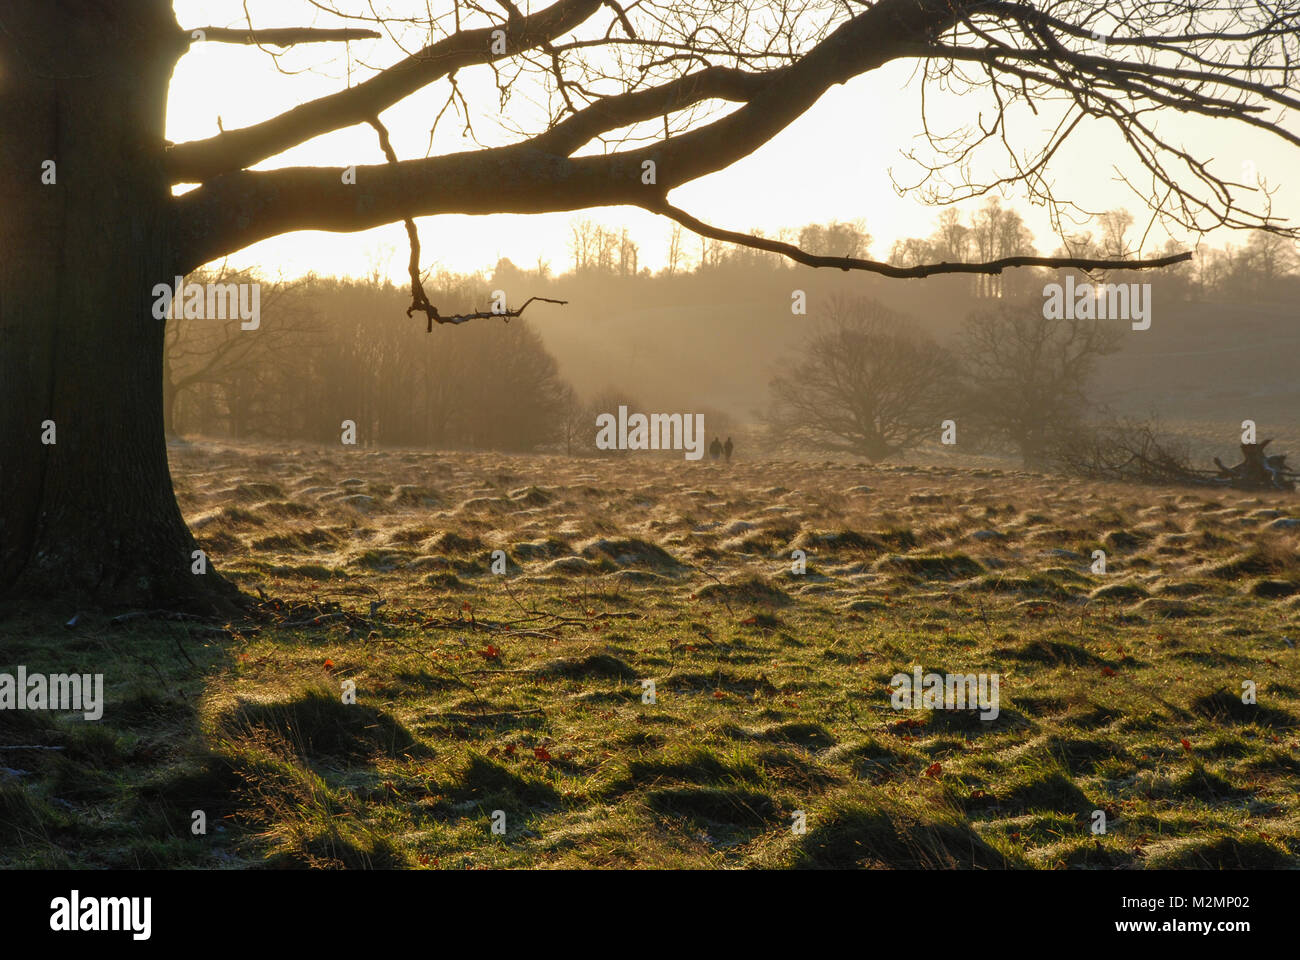 La mattina presto il paesaggio a Petworth Park nel West Sussex, Regno Unito. Una bella e soleggiata ma gelida giornata invernale nella campagna inglese. Foto Stock